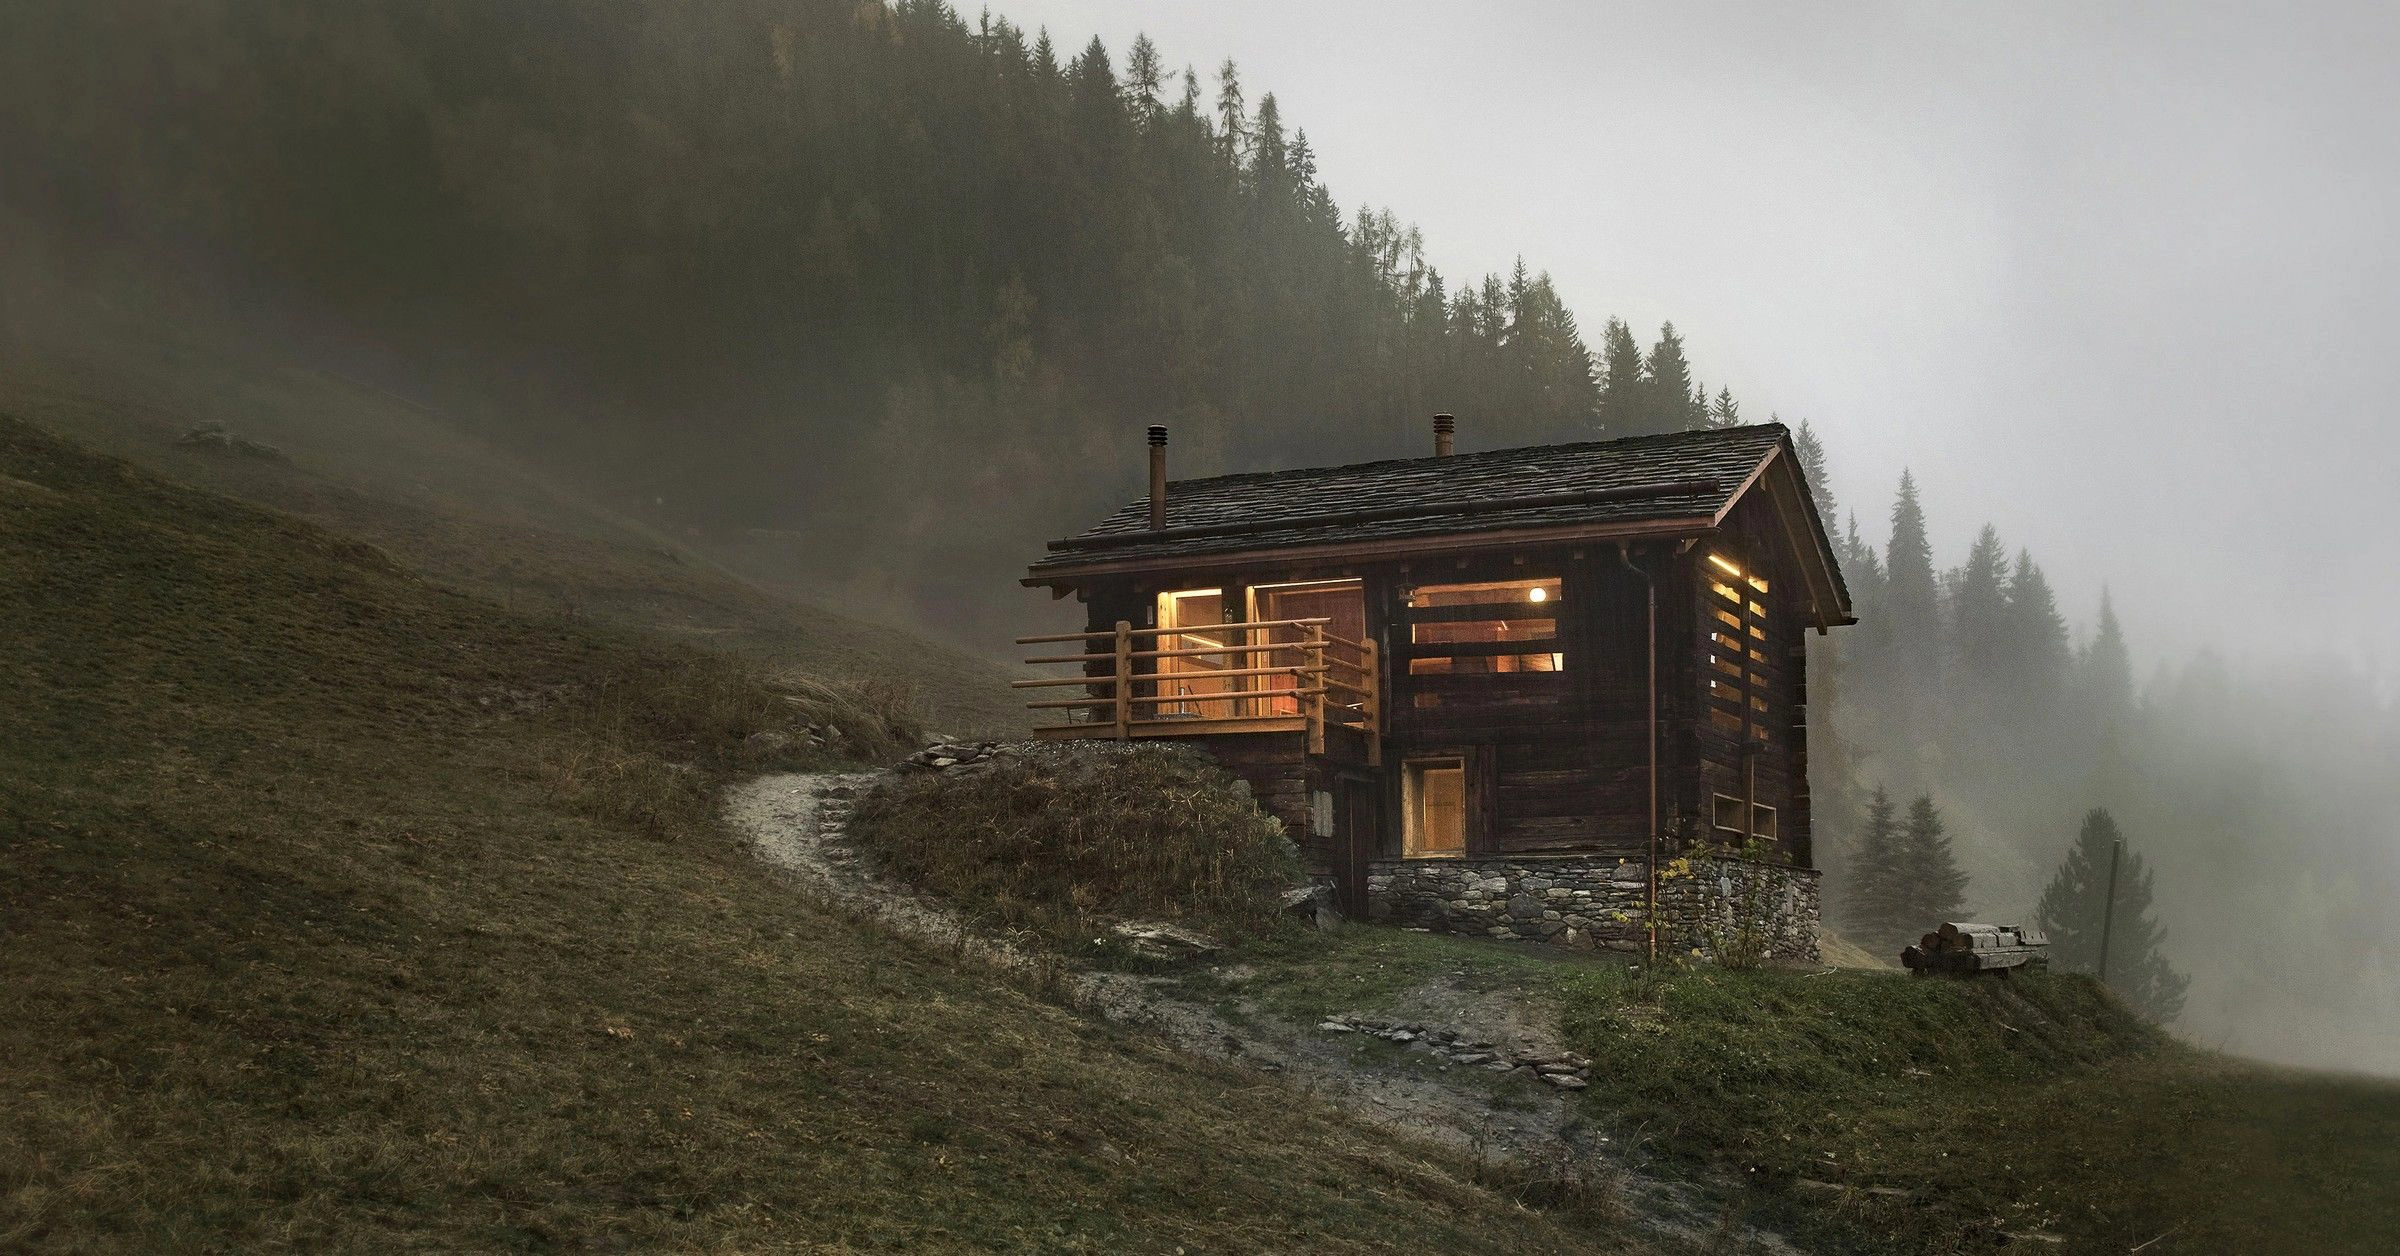 Teraźniejszość zamknięta w przeszłości – chatka na Alpejskich zboczach